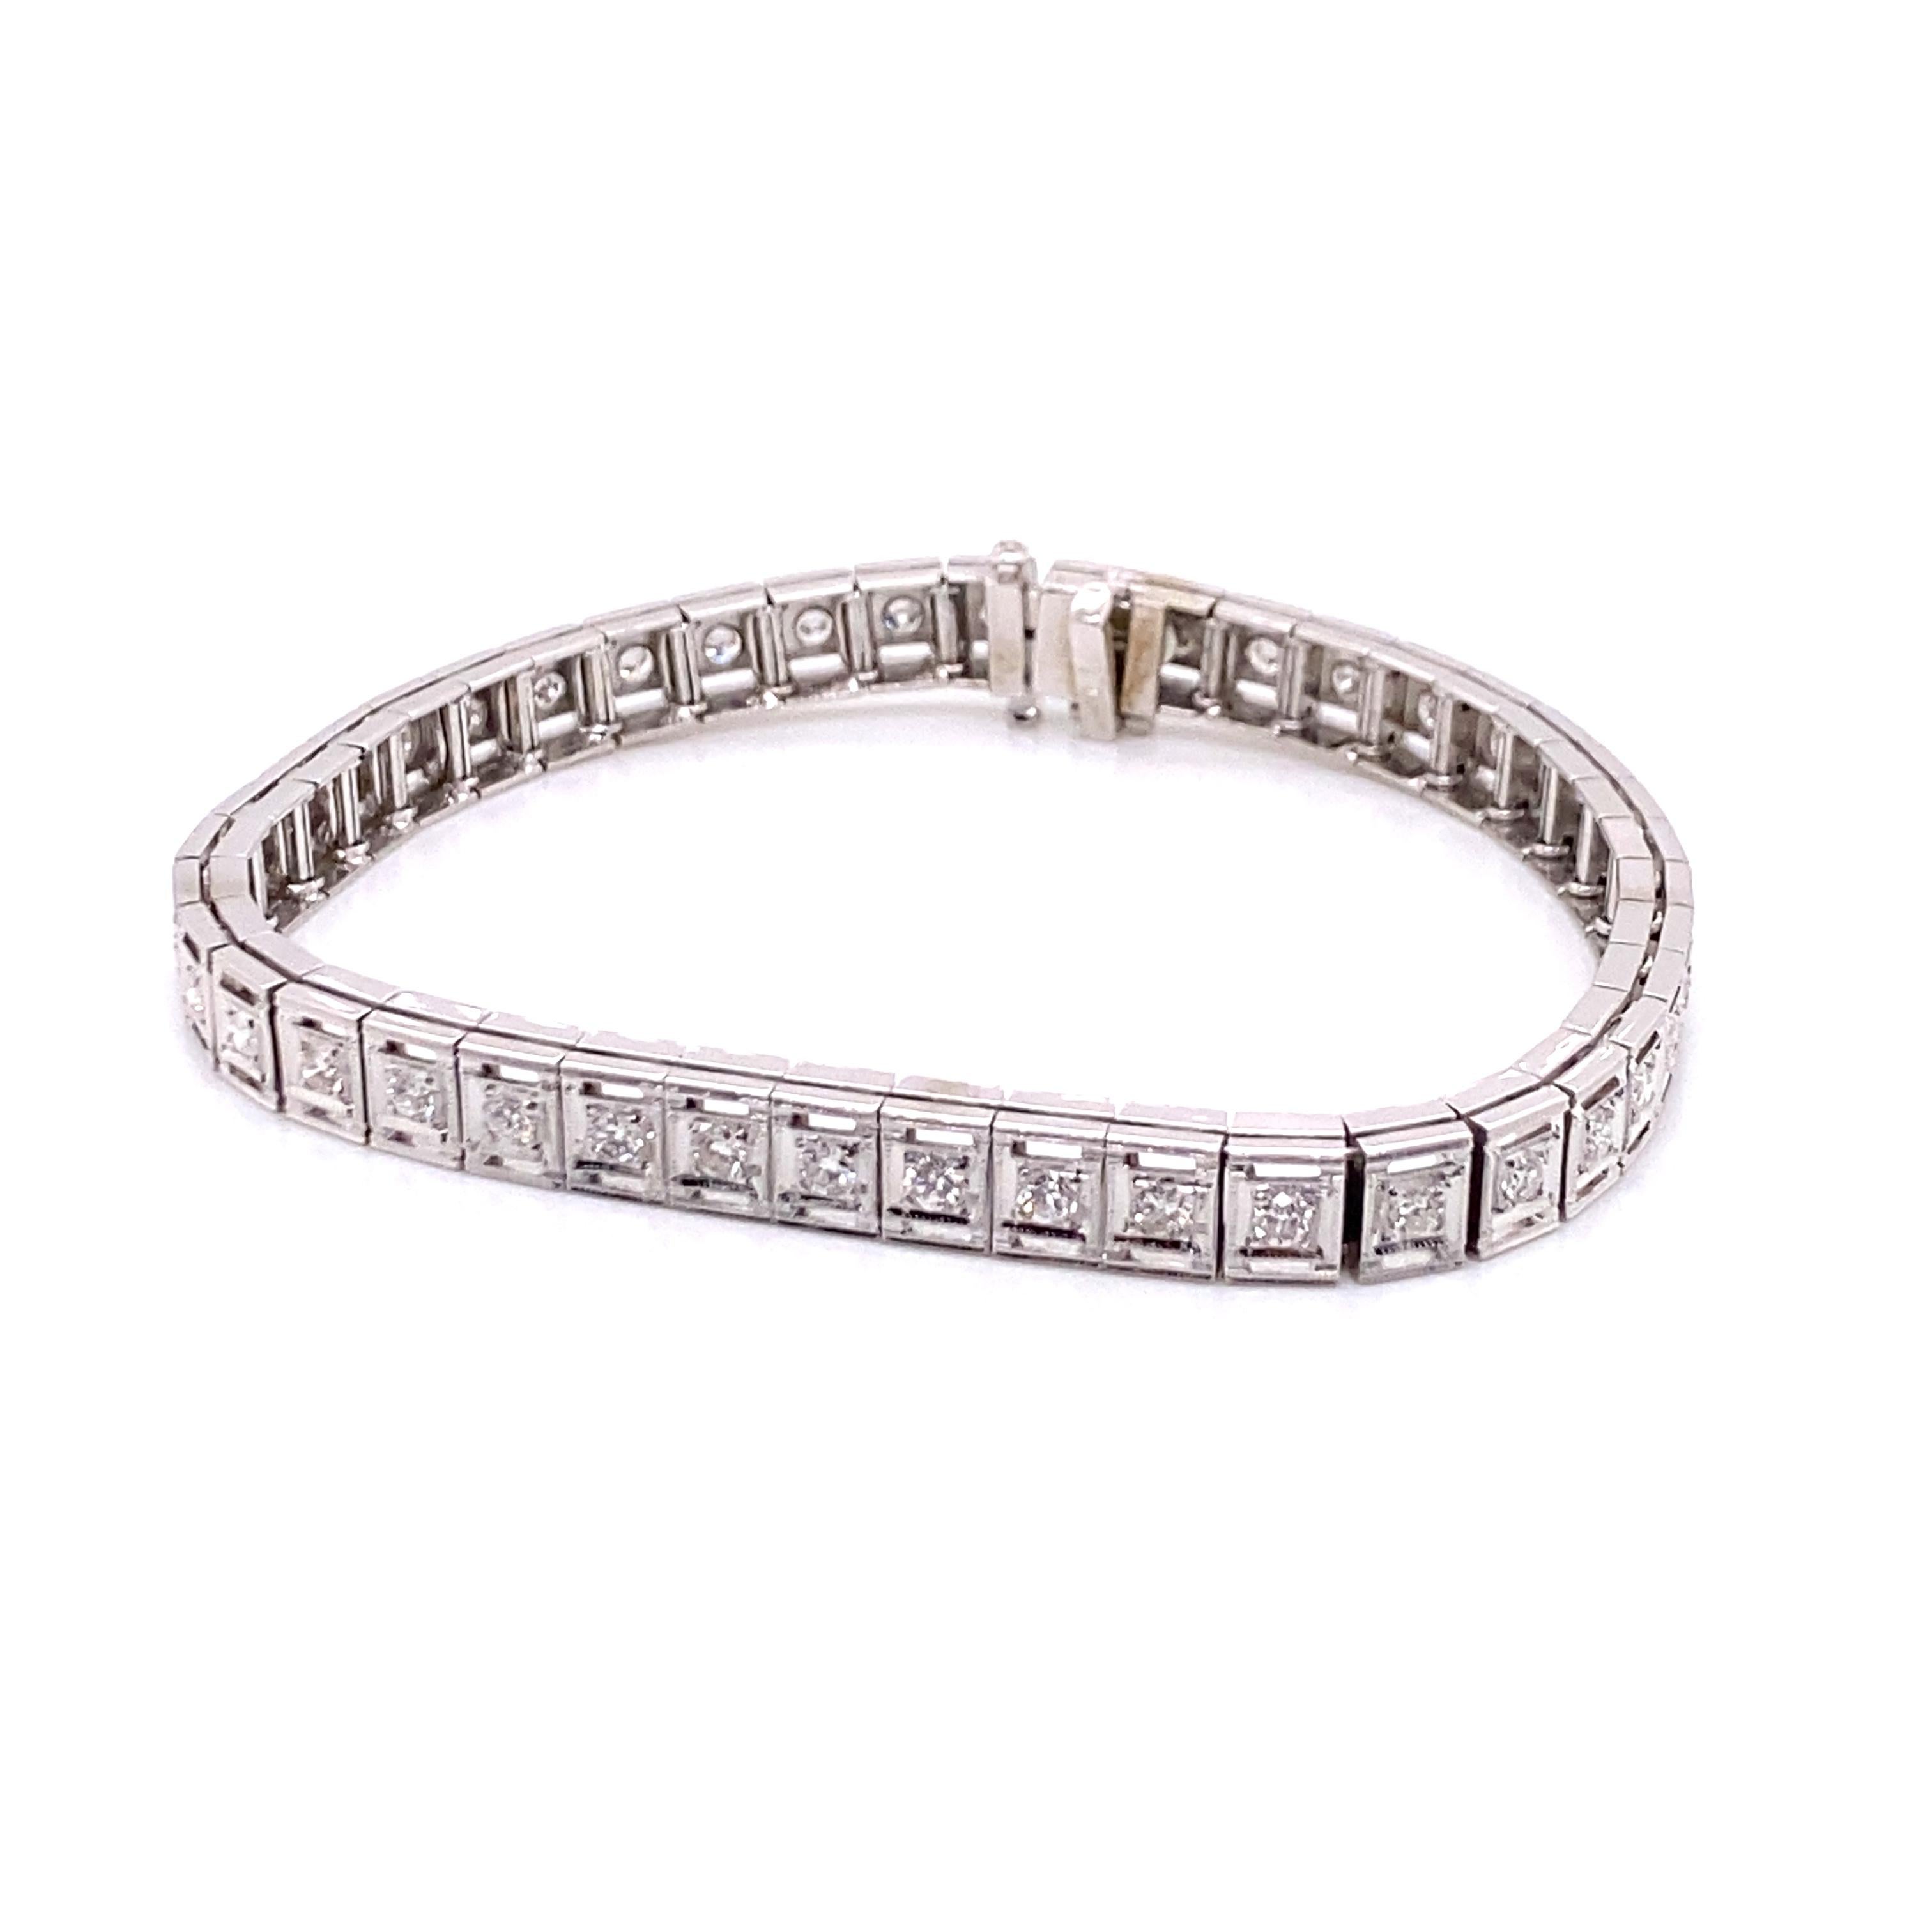 Vintage 1950's 14K White Gold Diamond Tennis Bracelet 1.26ct - Le bracelet de style boîte de ligne contient 42 diamants ronds pesant approximativement 1.26ct avec couleur G - H et clarté SI. Le bracelet mesure 6,75 pouces de long et 0,25 pouce de